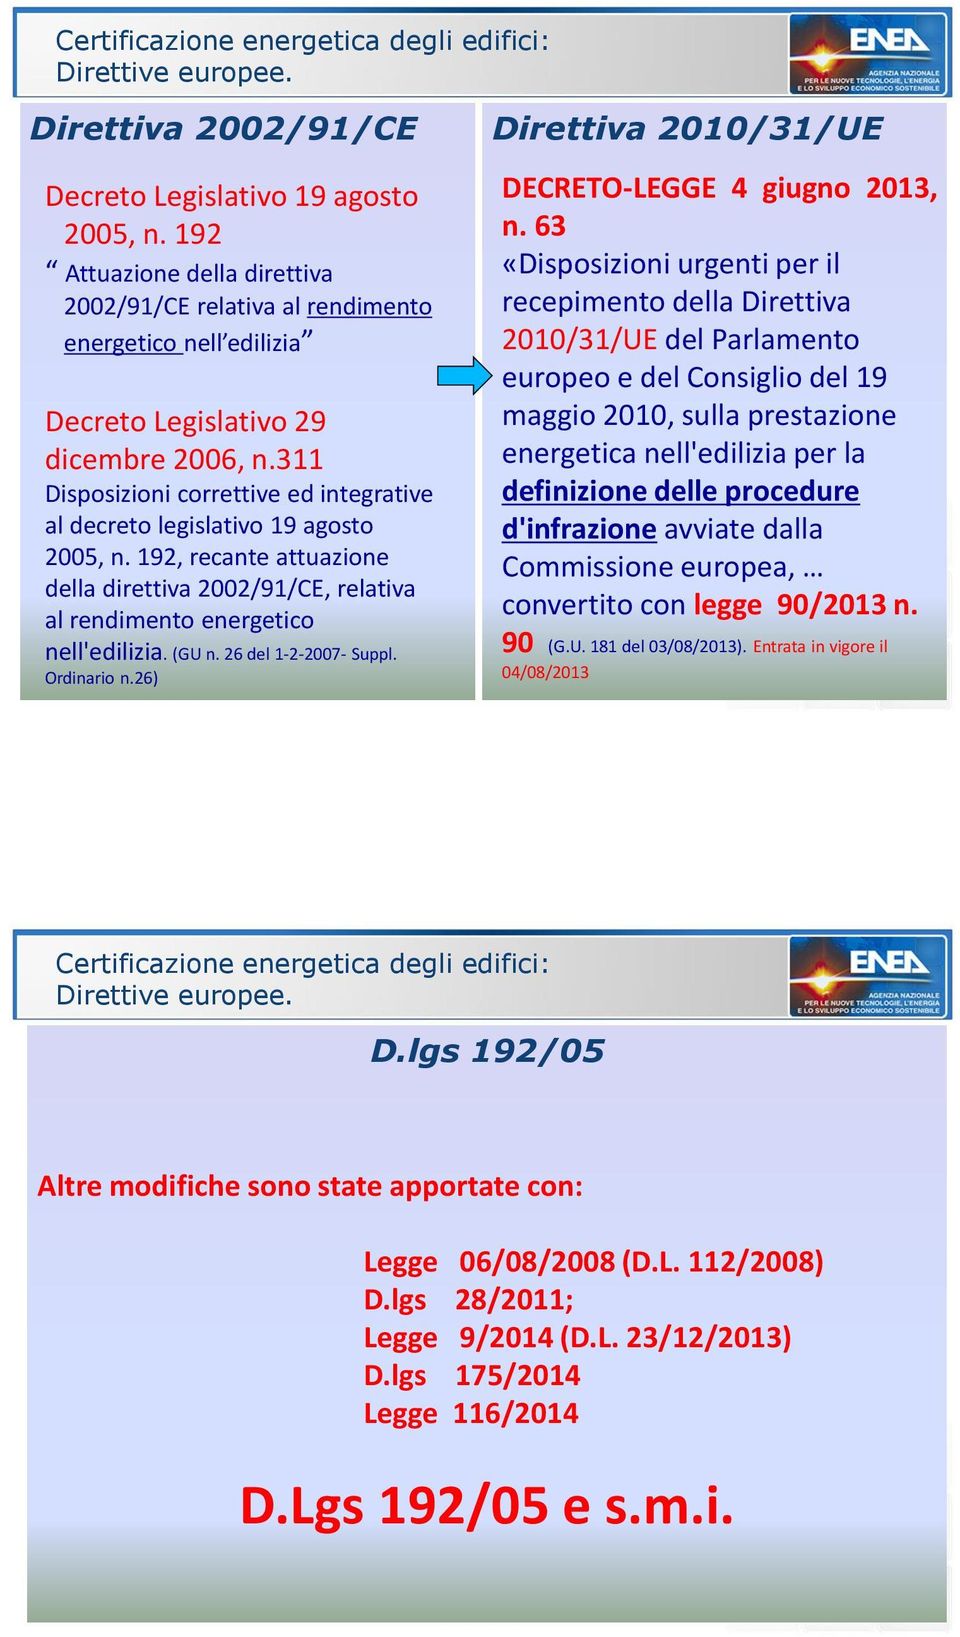 311 Disposizioni correttive ed integrative al decreto legislativo 19 agosto 2005, n. 192, recante attuazione della direttiva 2002/91/CE, relativa al rendimento energetico nell'edilizia. (GU n.